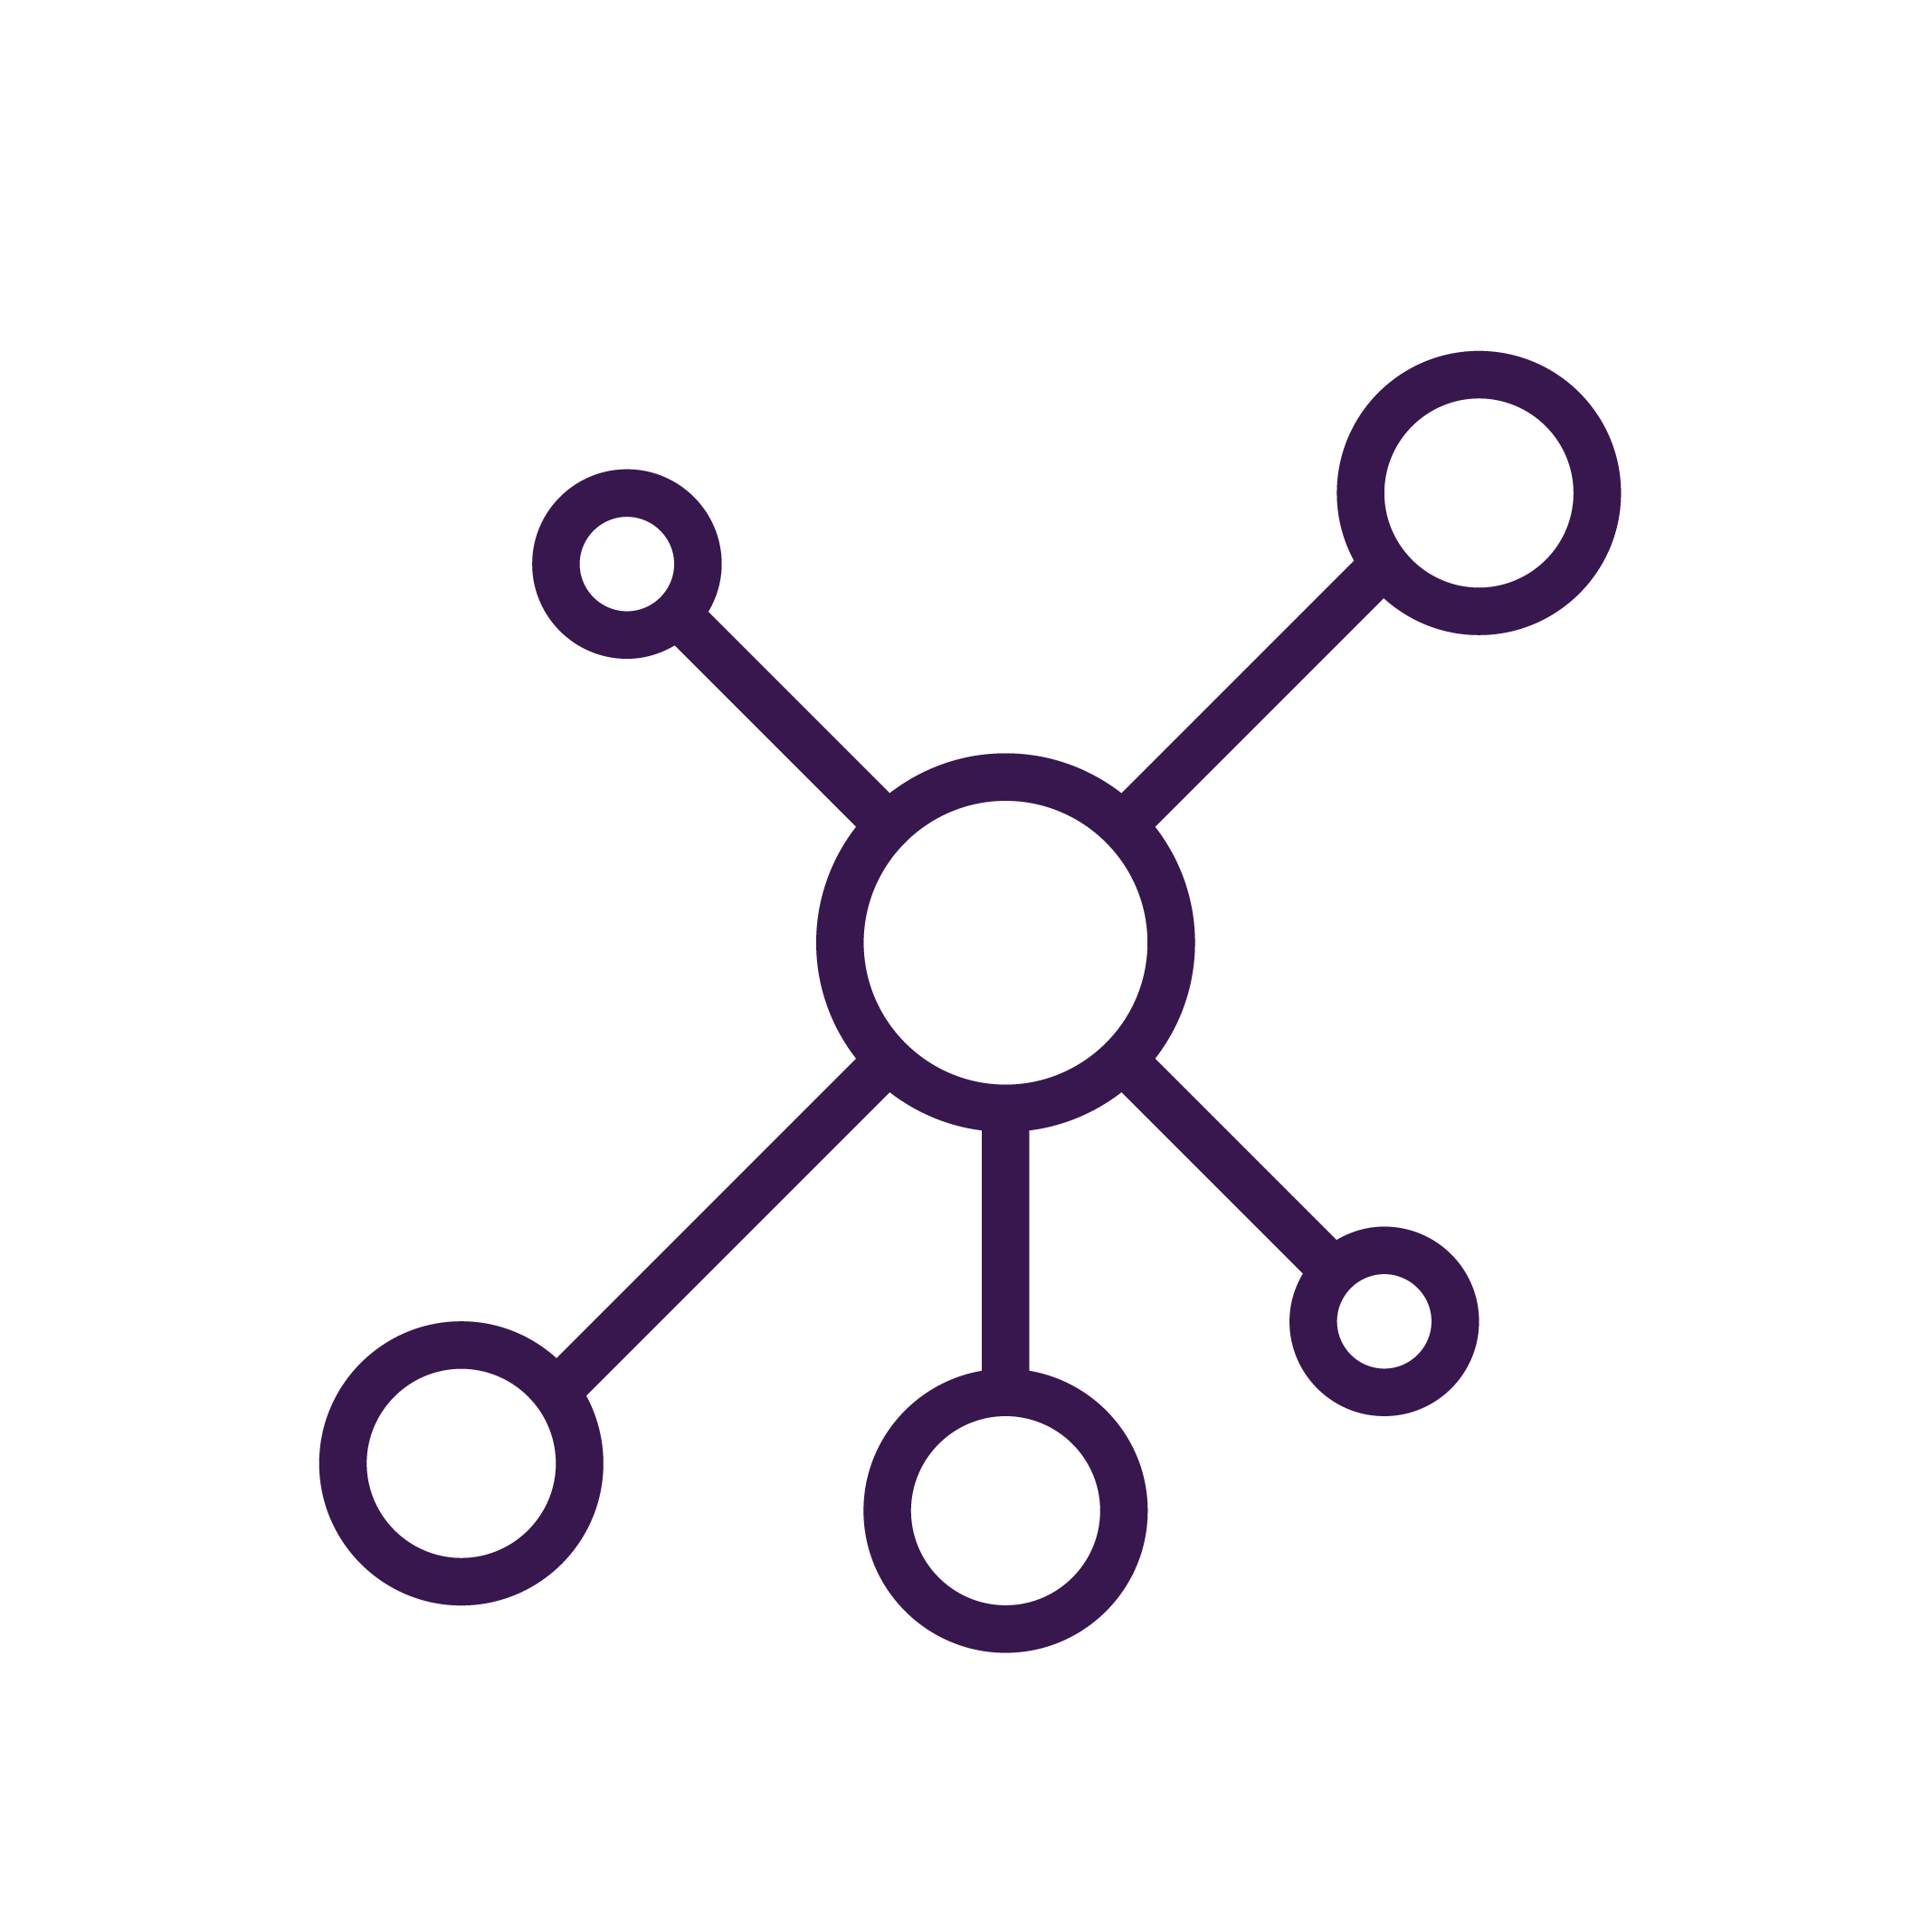 Icono de puntos unidos por trazos de lineas que simbolizan una red de personas